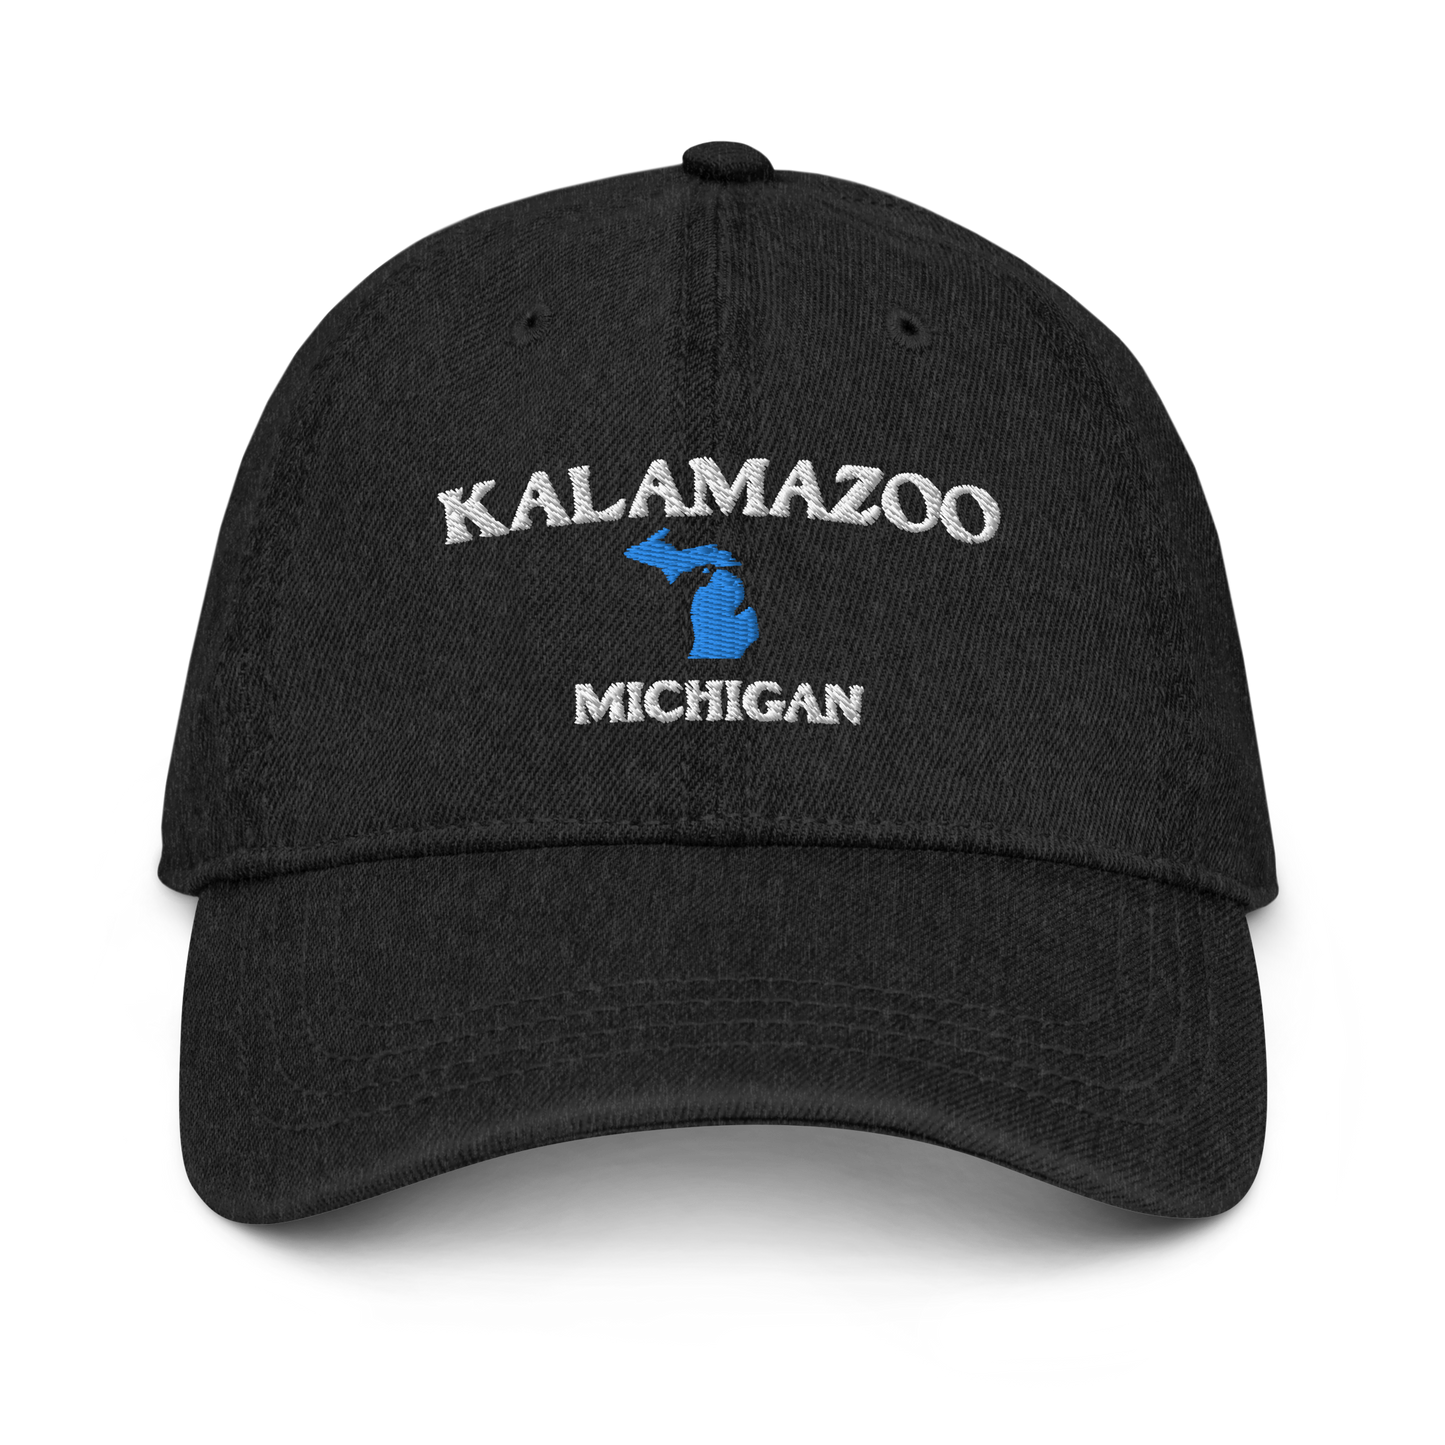 'Kalamazoo Michigan' Denim Baseball Cap (w/ Michigan Outline)